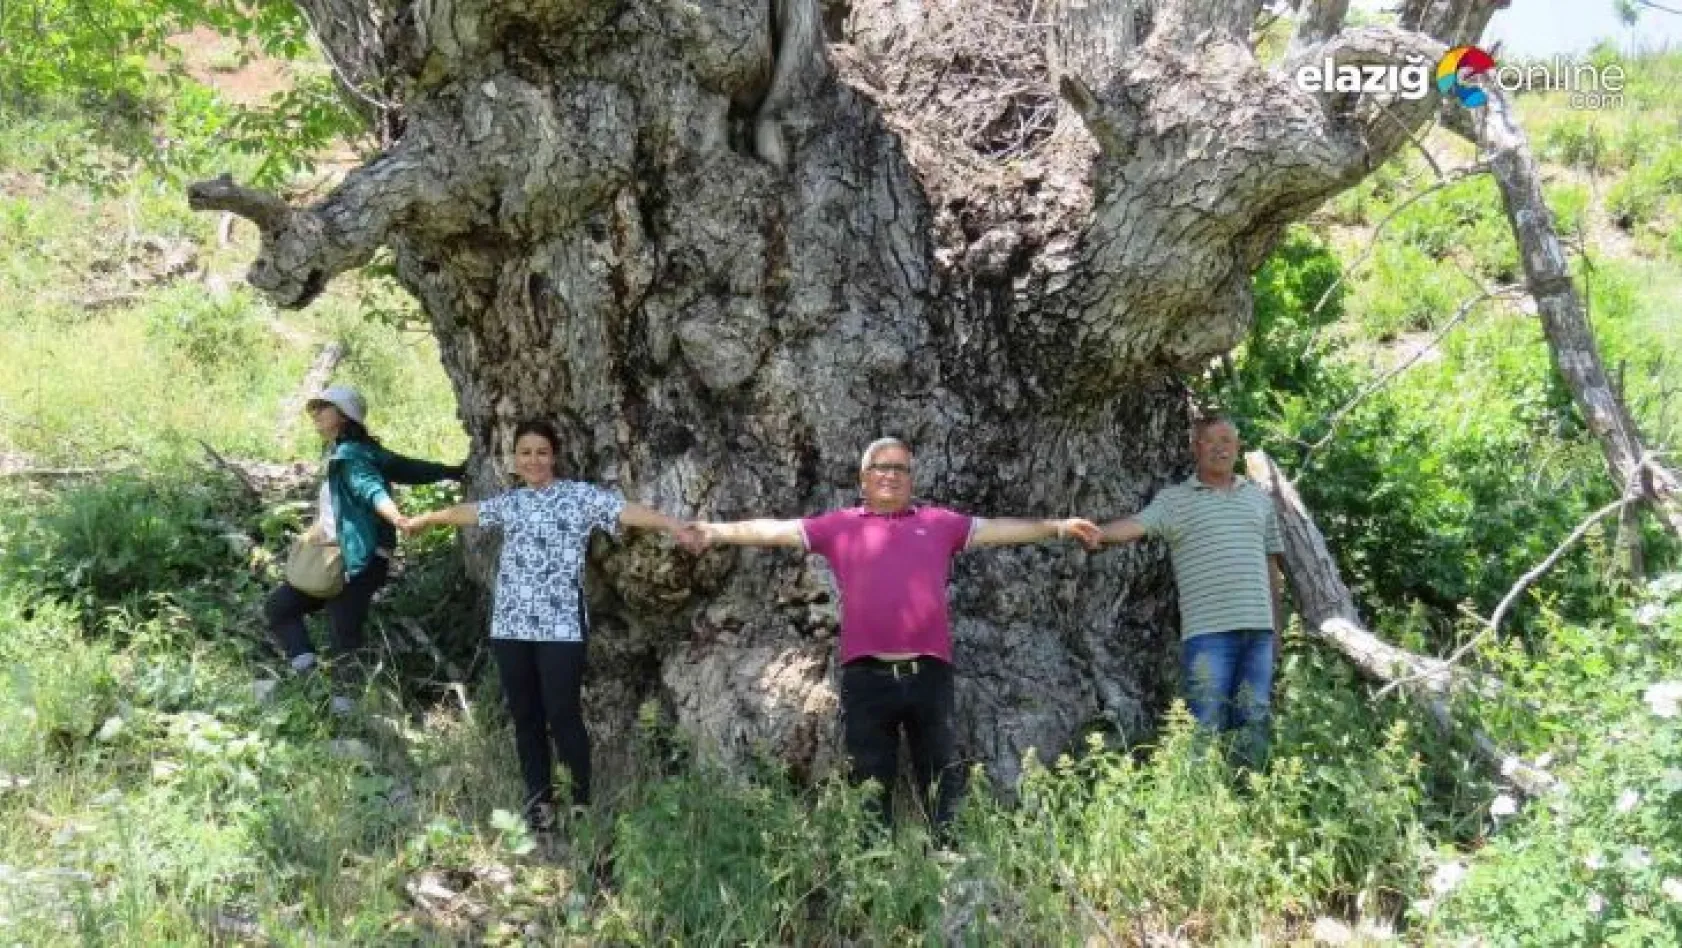 Türkiye'de şu ana kadar görülmedi: Tunceli'de 9 metre 22 santimetre gövde çapına sahip ceviz ağacı tespit edildi